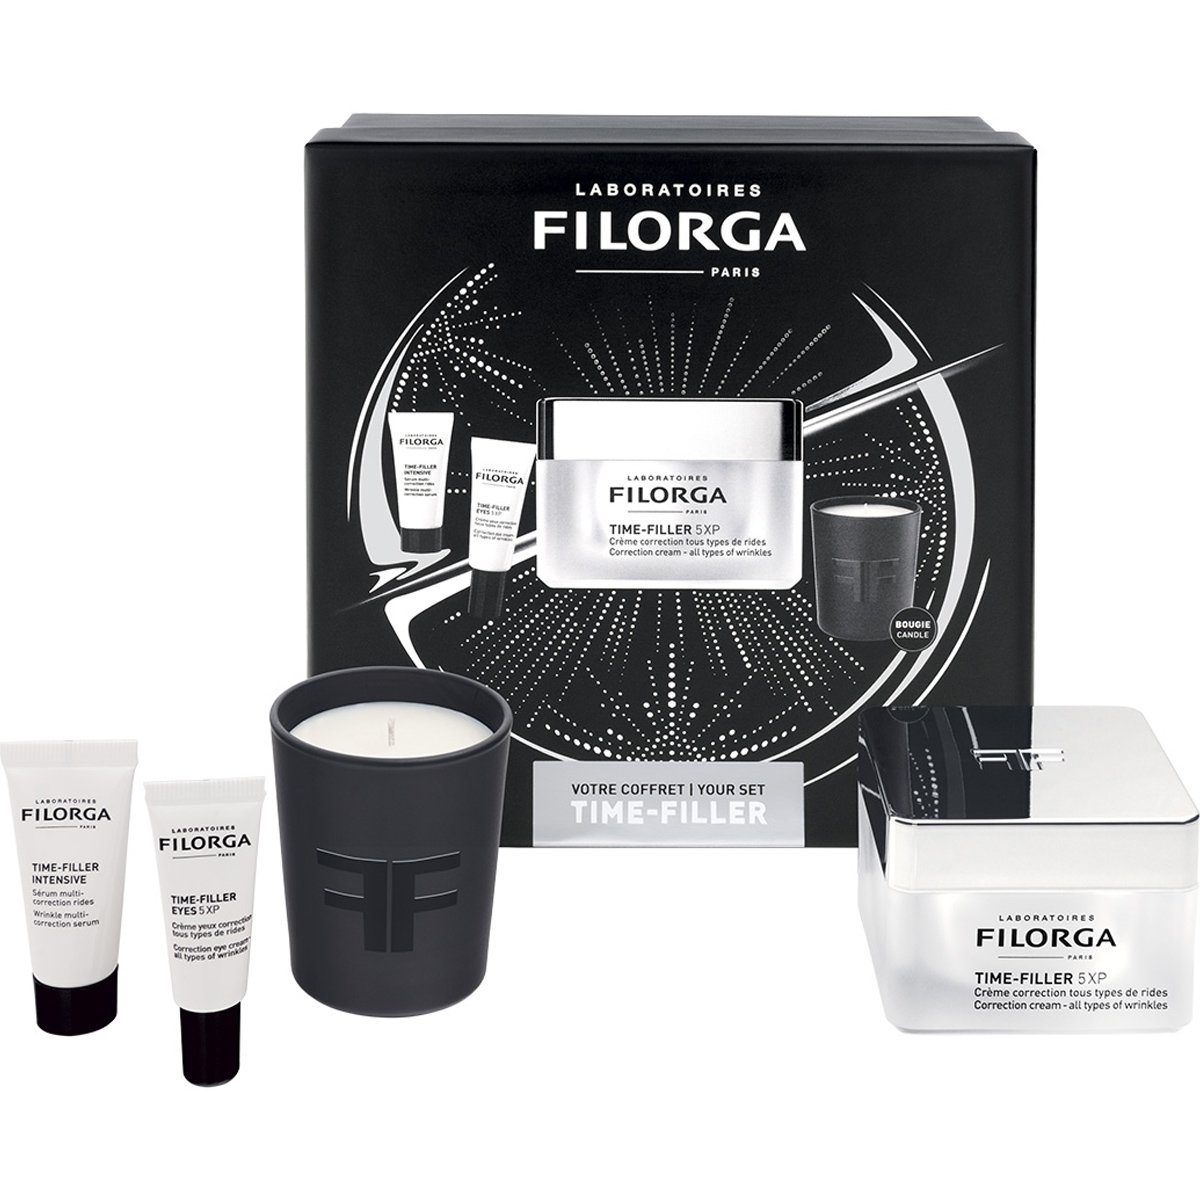 Filorga Filorga Promo Your Time-Filler Set Anti-Wrinkle Routine Time-Filler 5XP Correction Cream 50ml & Intensive Serum 7ml & Eyes 5XP 4ml & Scented Candle 1 Τεμάχιο